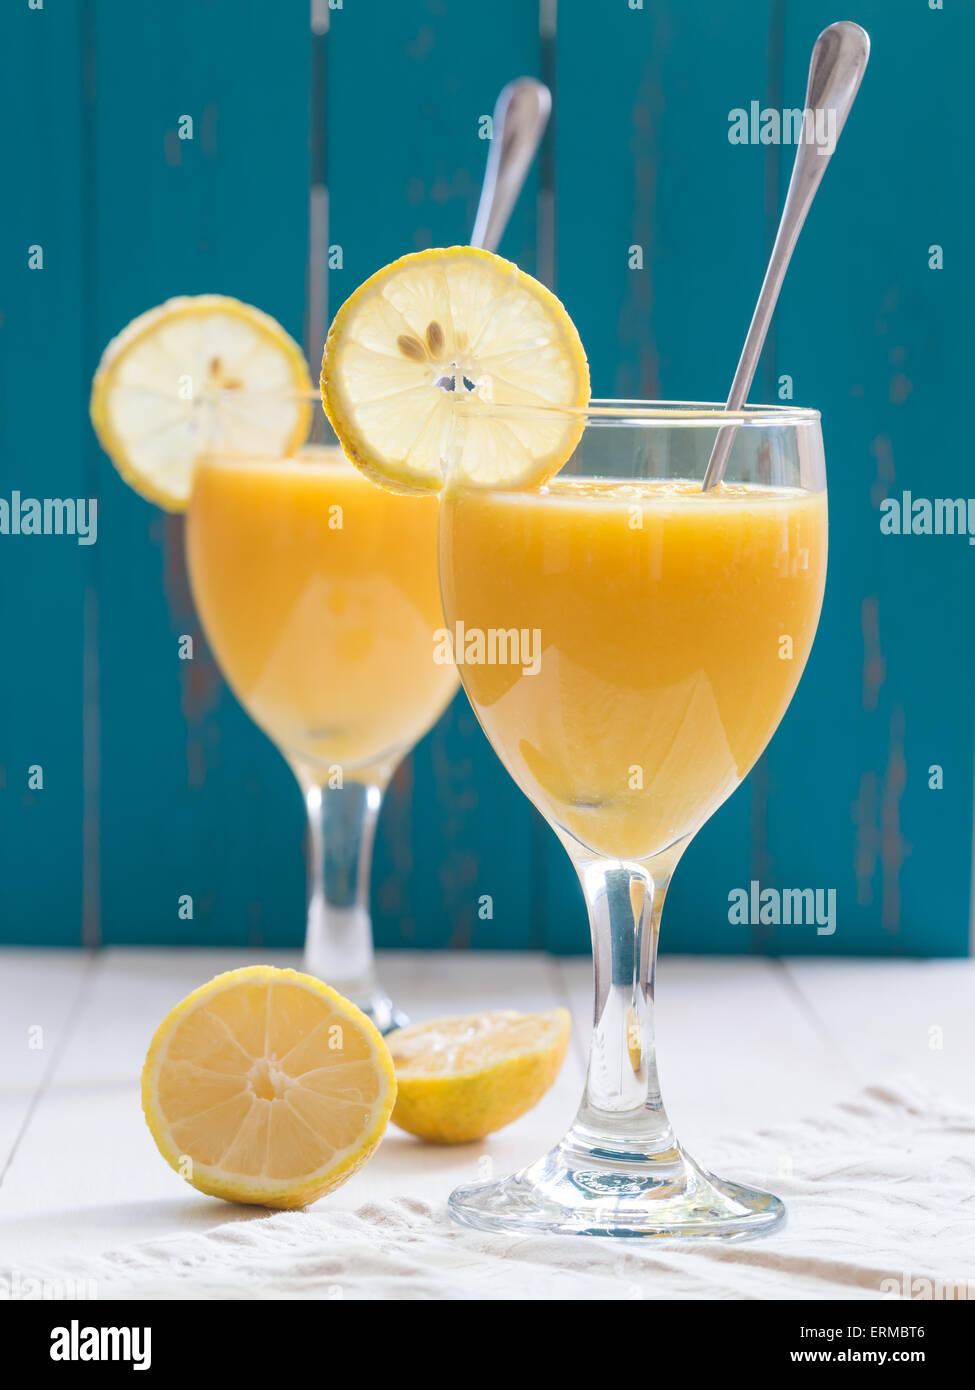 Zwei Gläser Wein von frischen gelben tropischen Frucht-Smoothie mit Mango und Ananas auf einen weißen Tisch platziert. Türkis Hintergrund Stockfoto